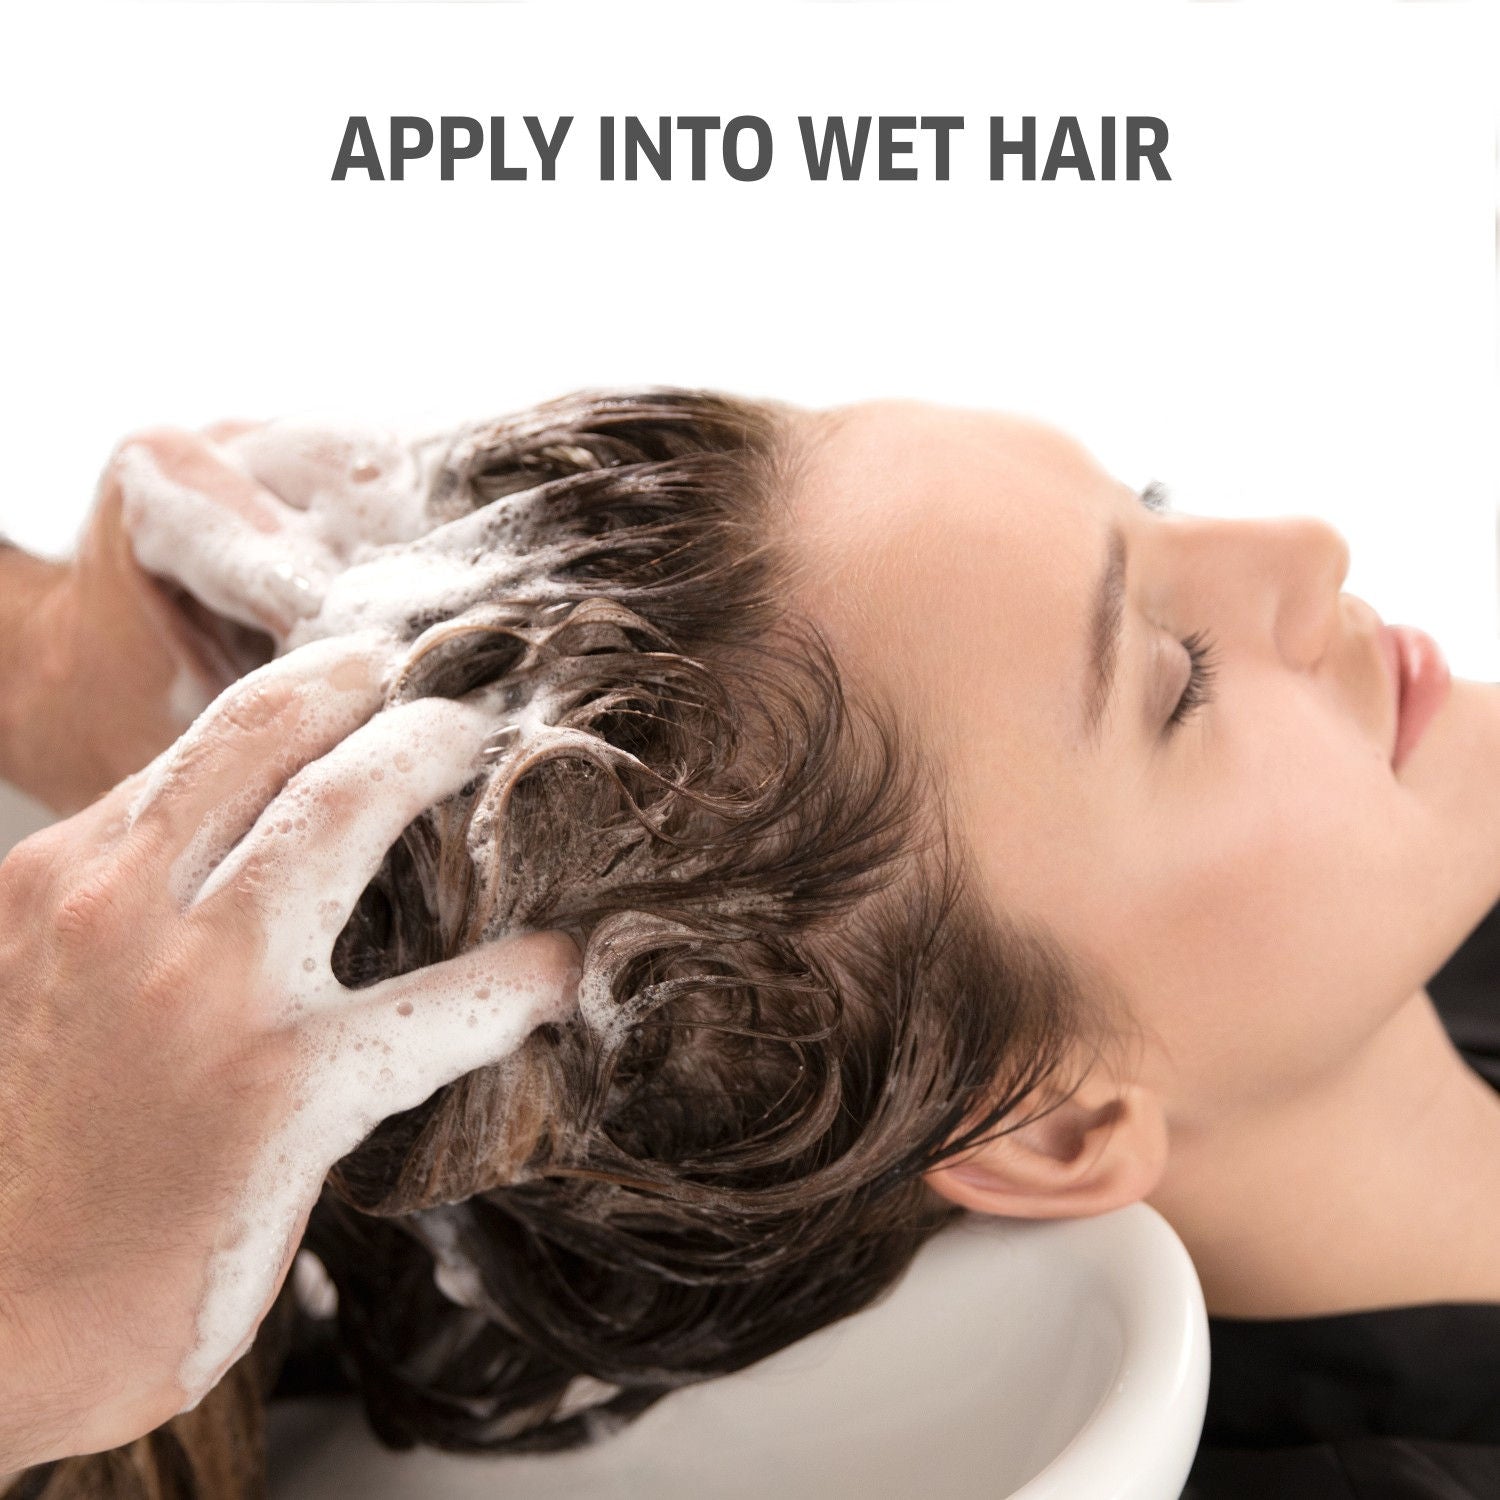 Wella Professionals Invigo Balance Clean Scalp Anti Dandruff Shampoo - 250 ml